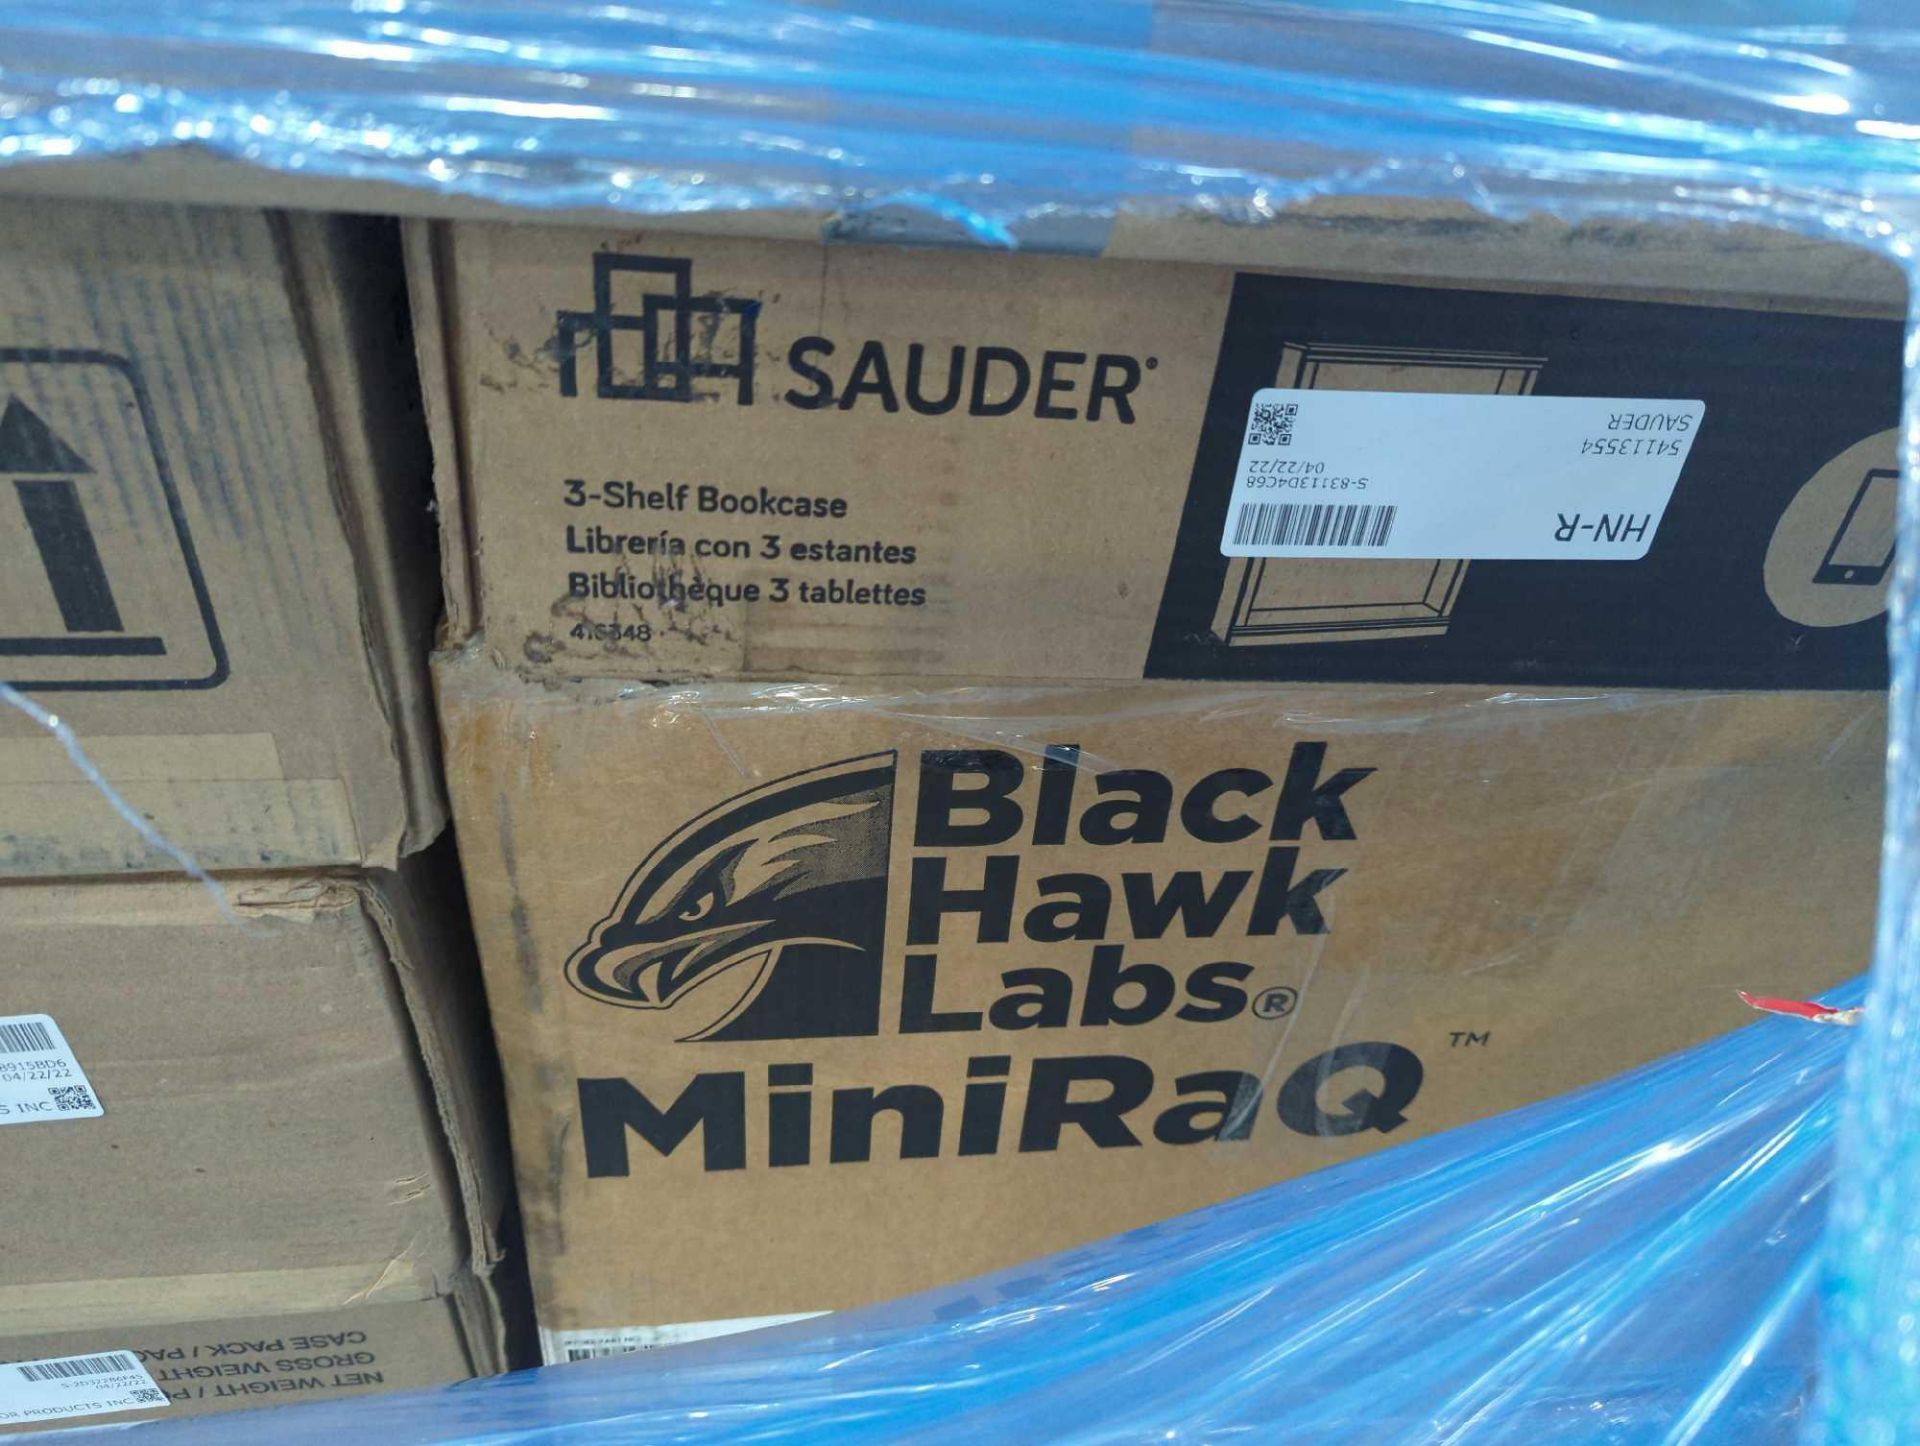 Black Hawk Labs Mini RaQ - Image 11 of 17